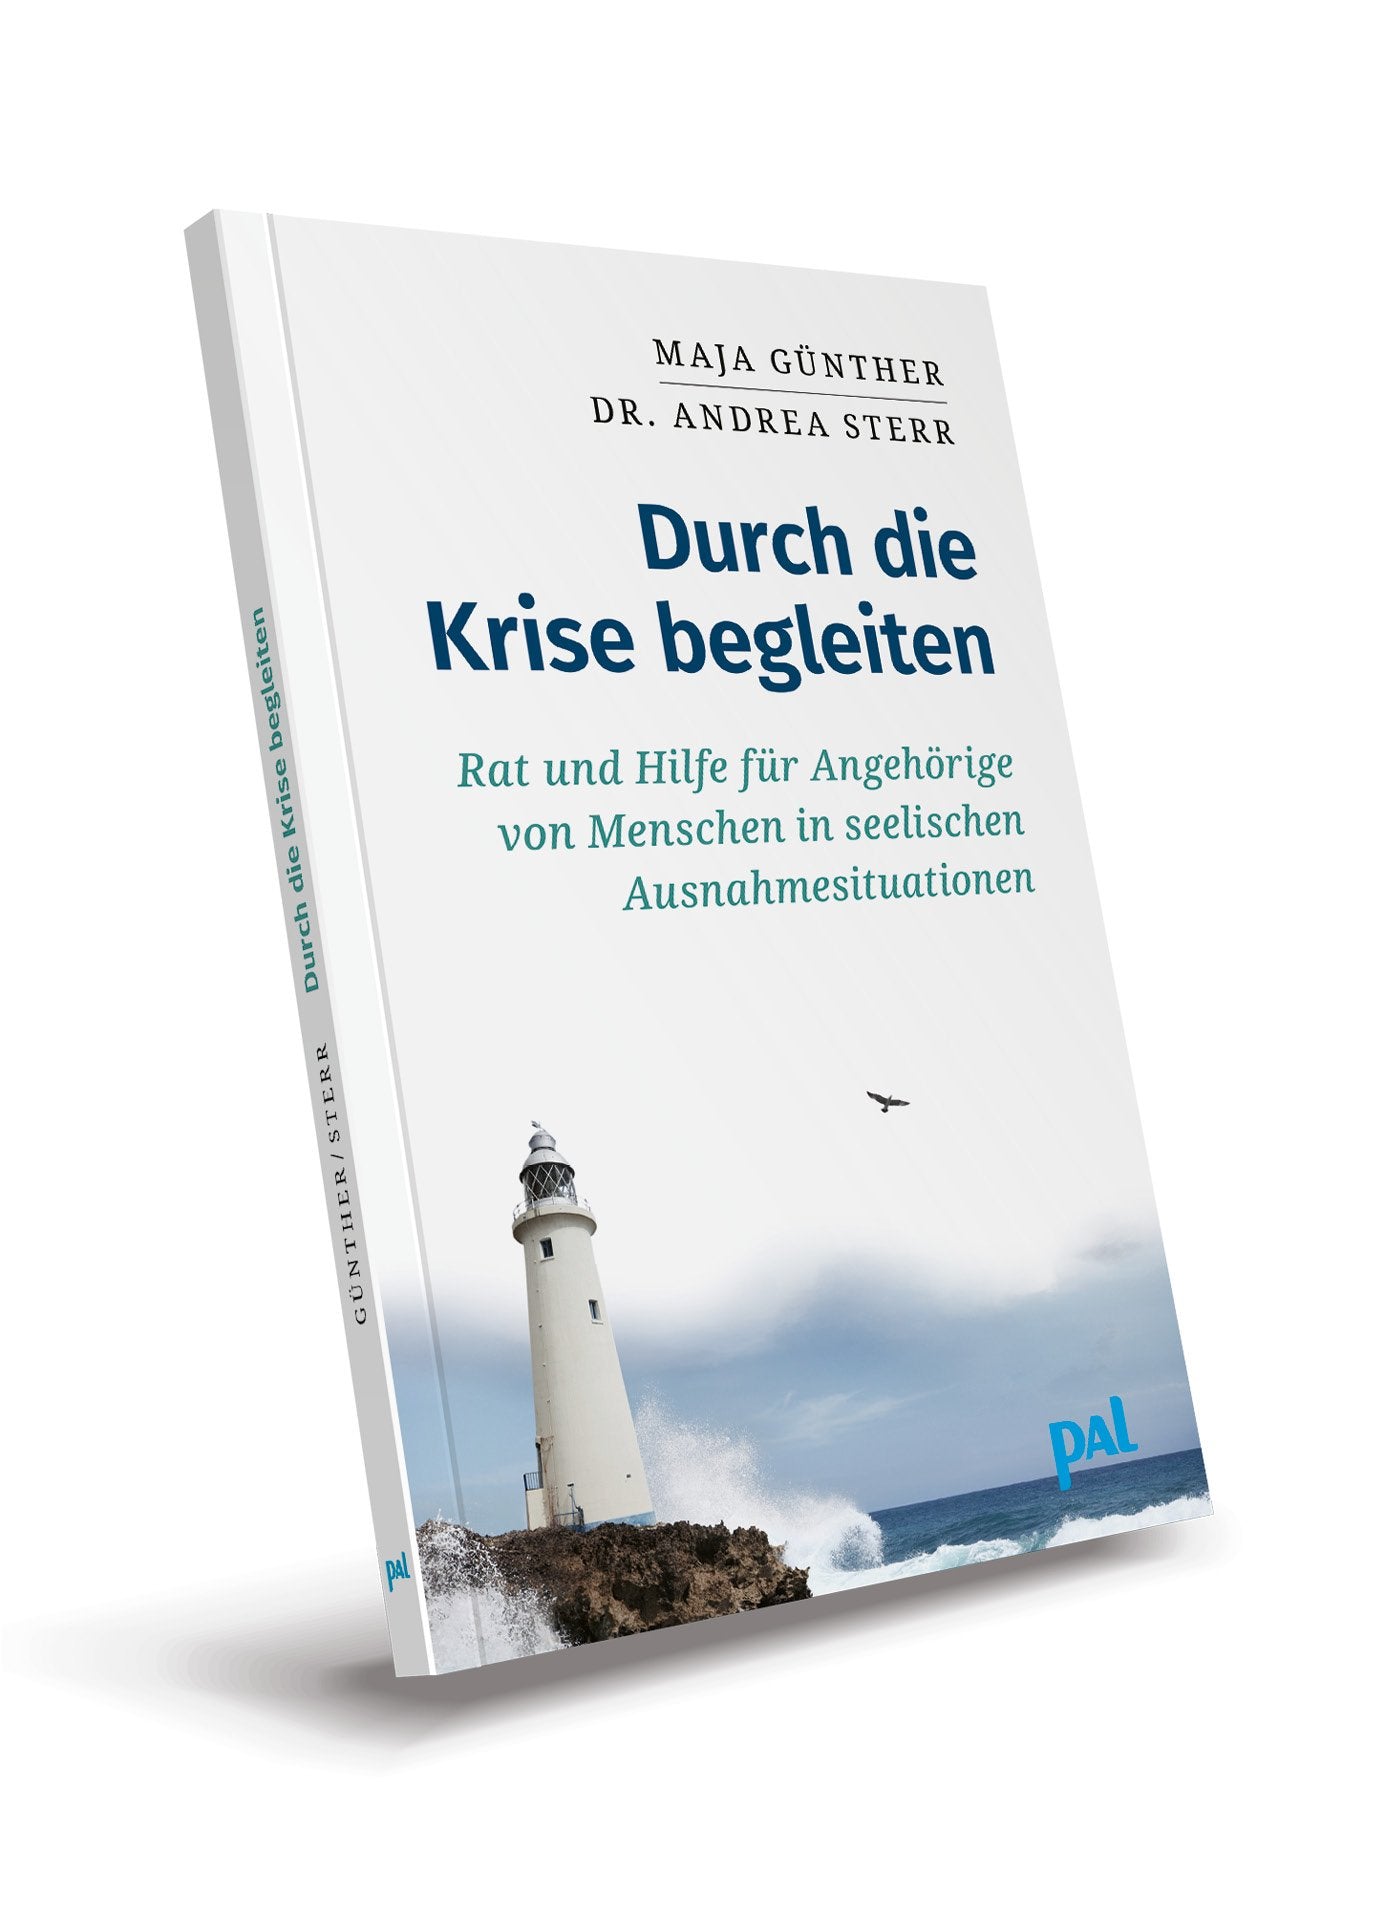 Ratgeber Psychologie Maja Günther Durch die Krise begleiten Angehörige PAL Verlag